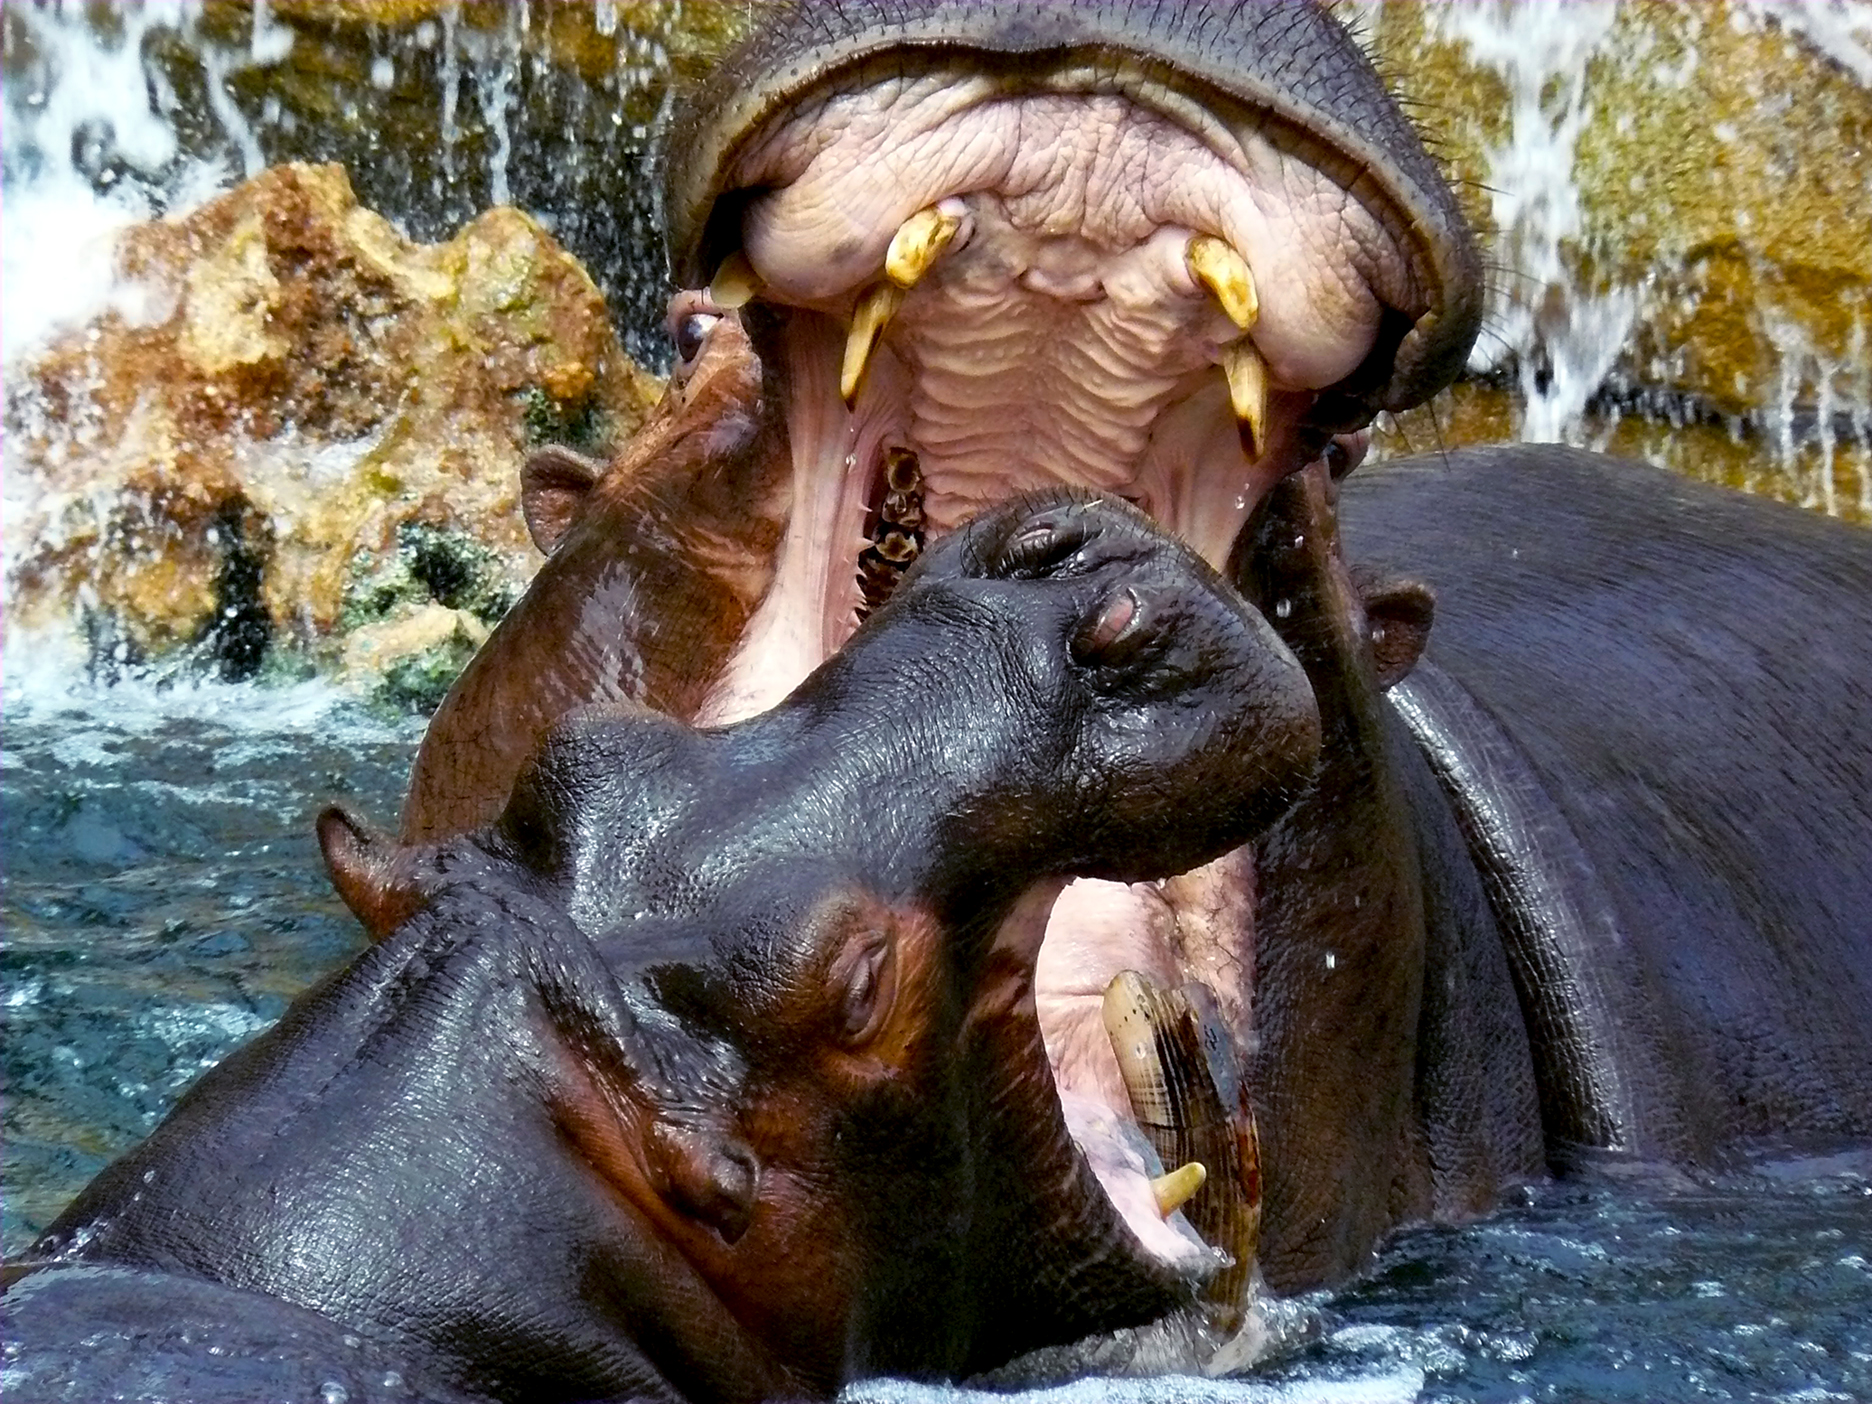 Il "ruggito" dell'ippopotamo di Gianni.Saiani  Photos